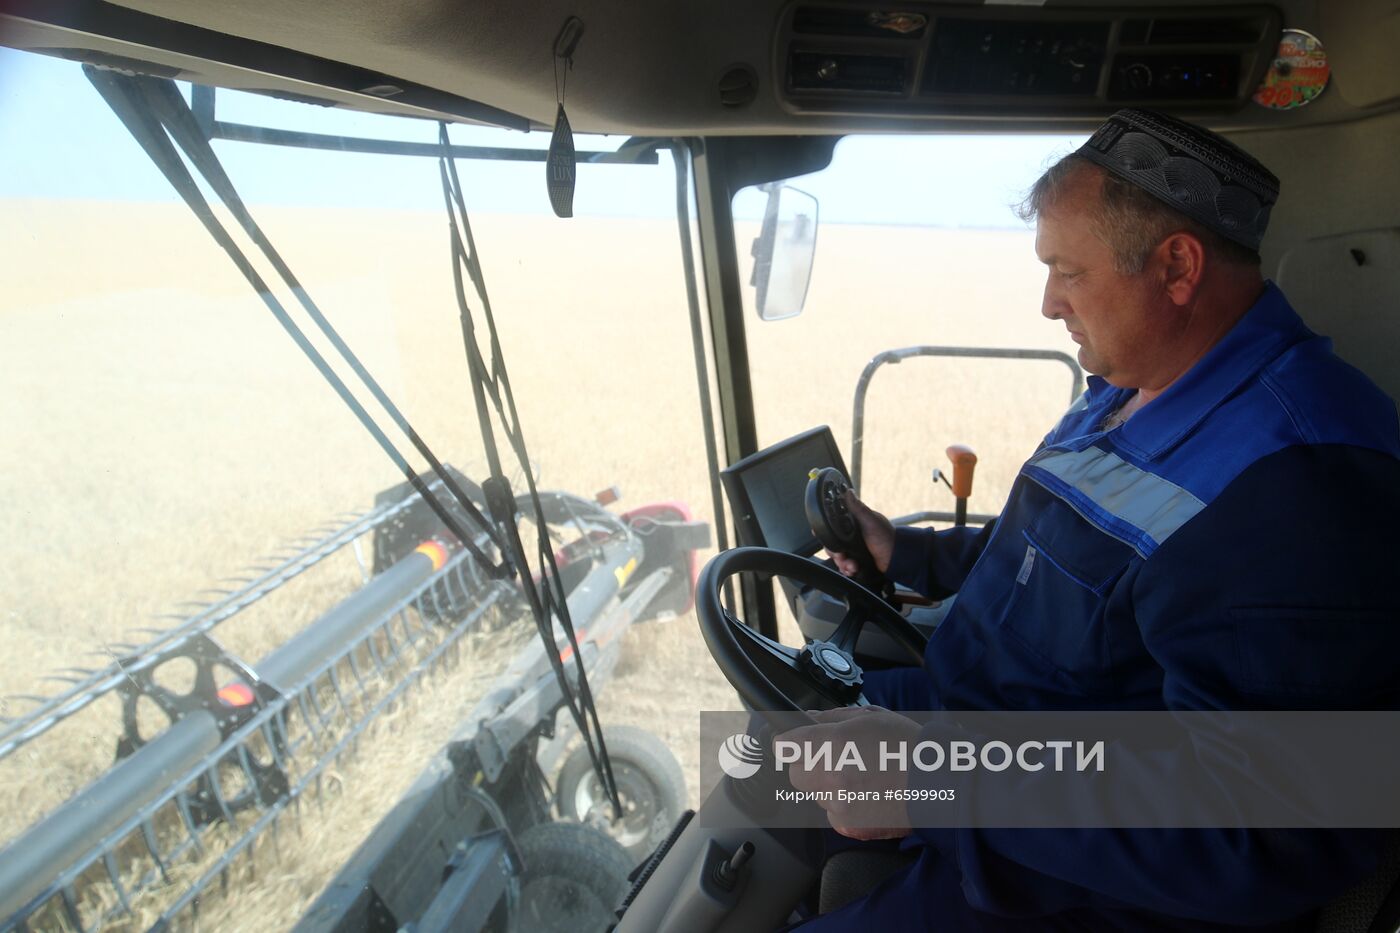 Уборка урожая пшеницы в Волгоградской области